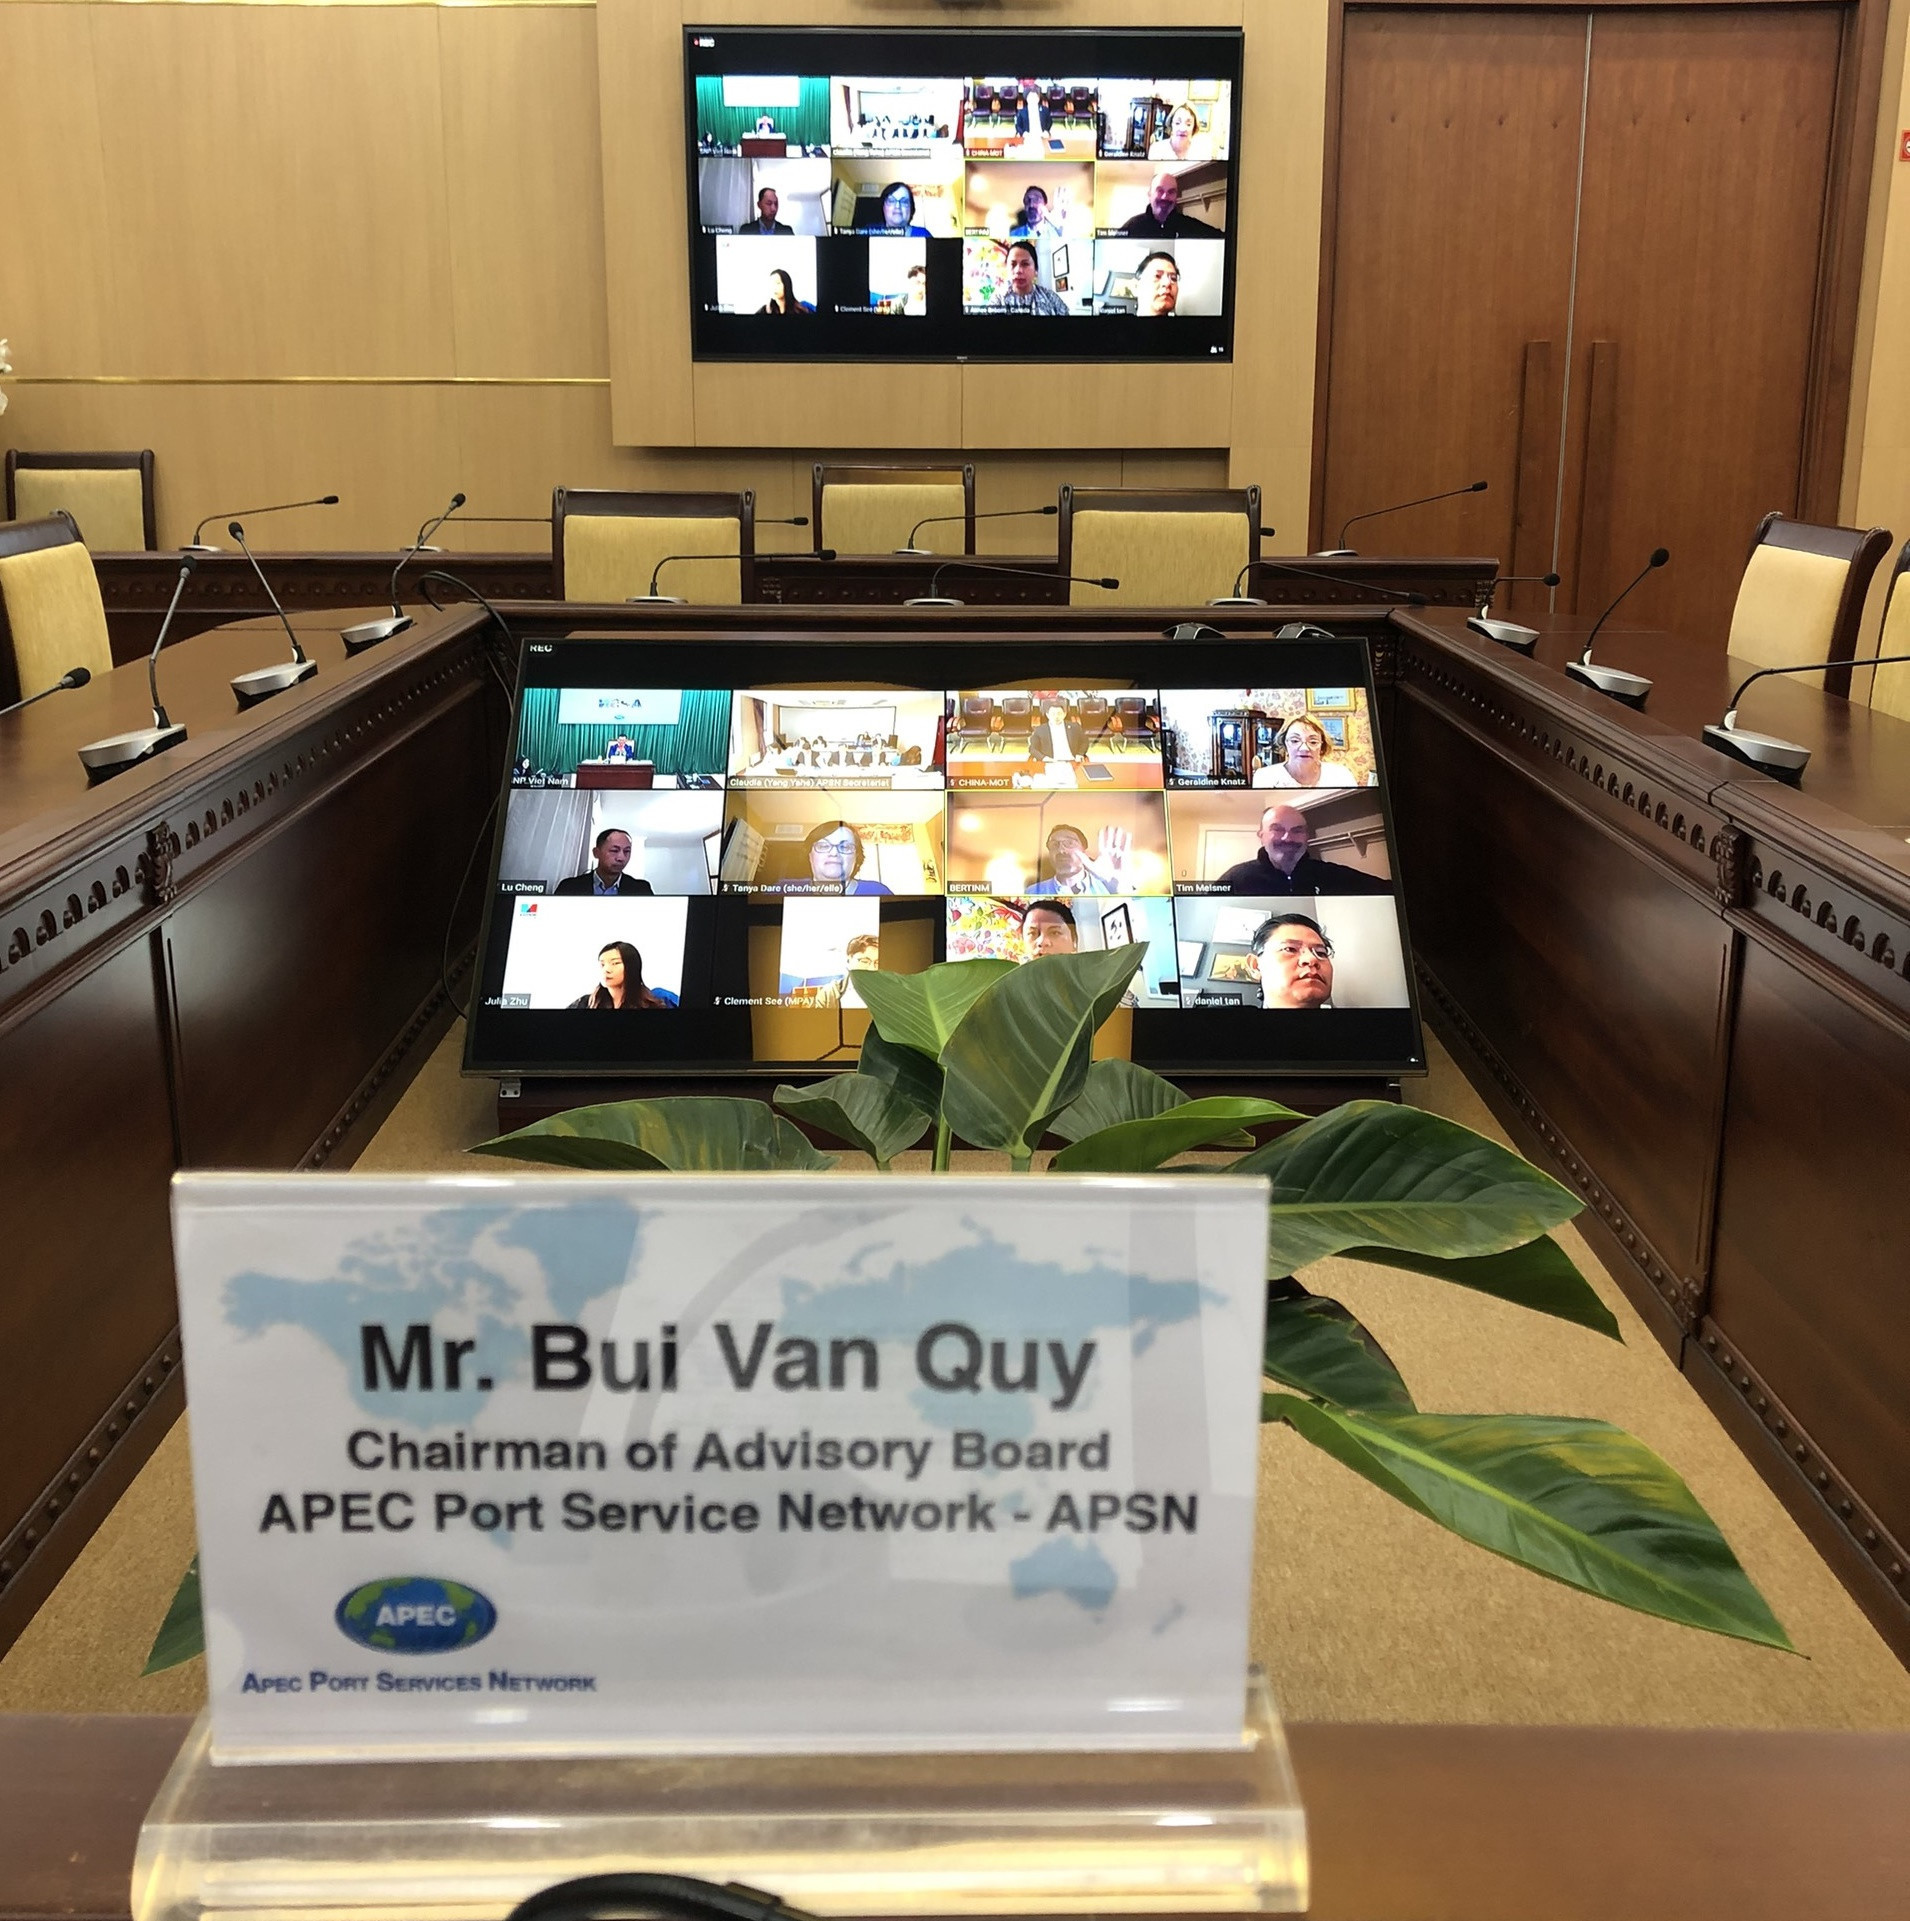 Phiên họp thường niên Hội đồng cố vấn cảng biển APEC lần thứ 10 diễn ra theo hình thức trực tuyến